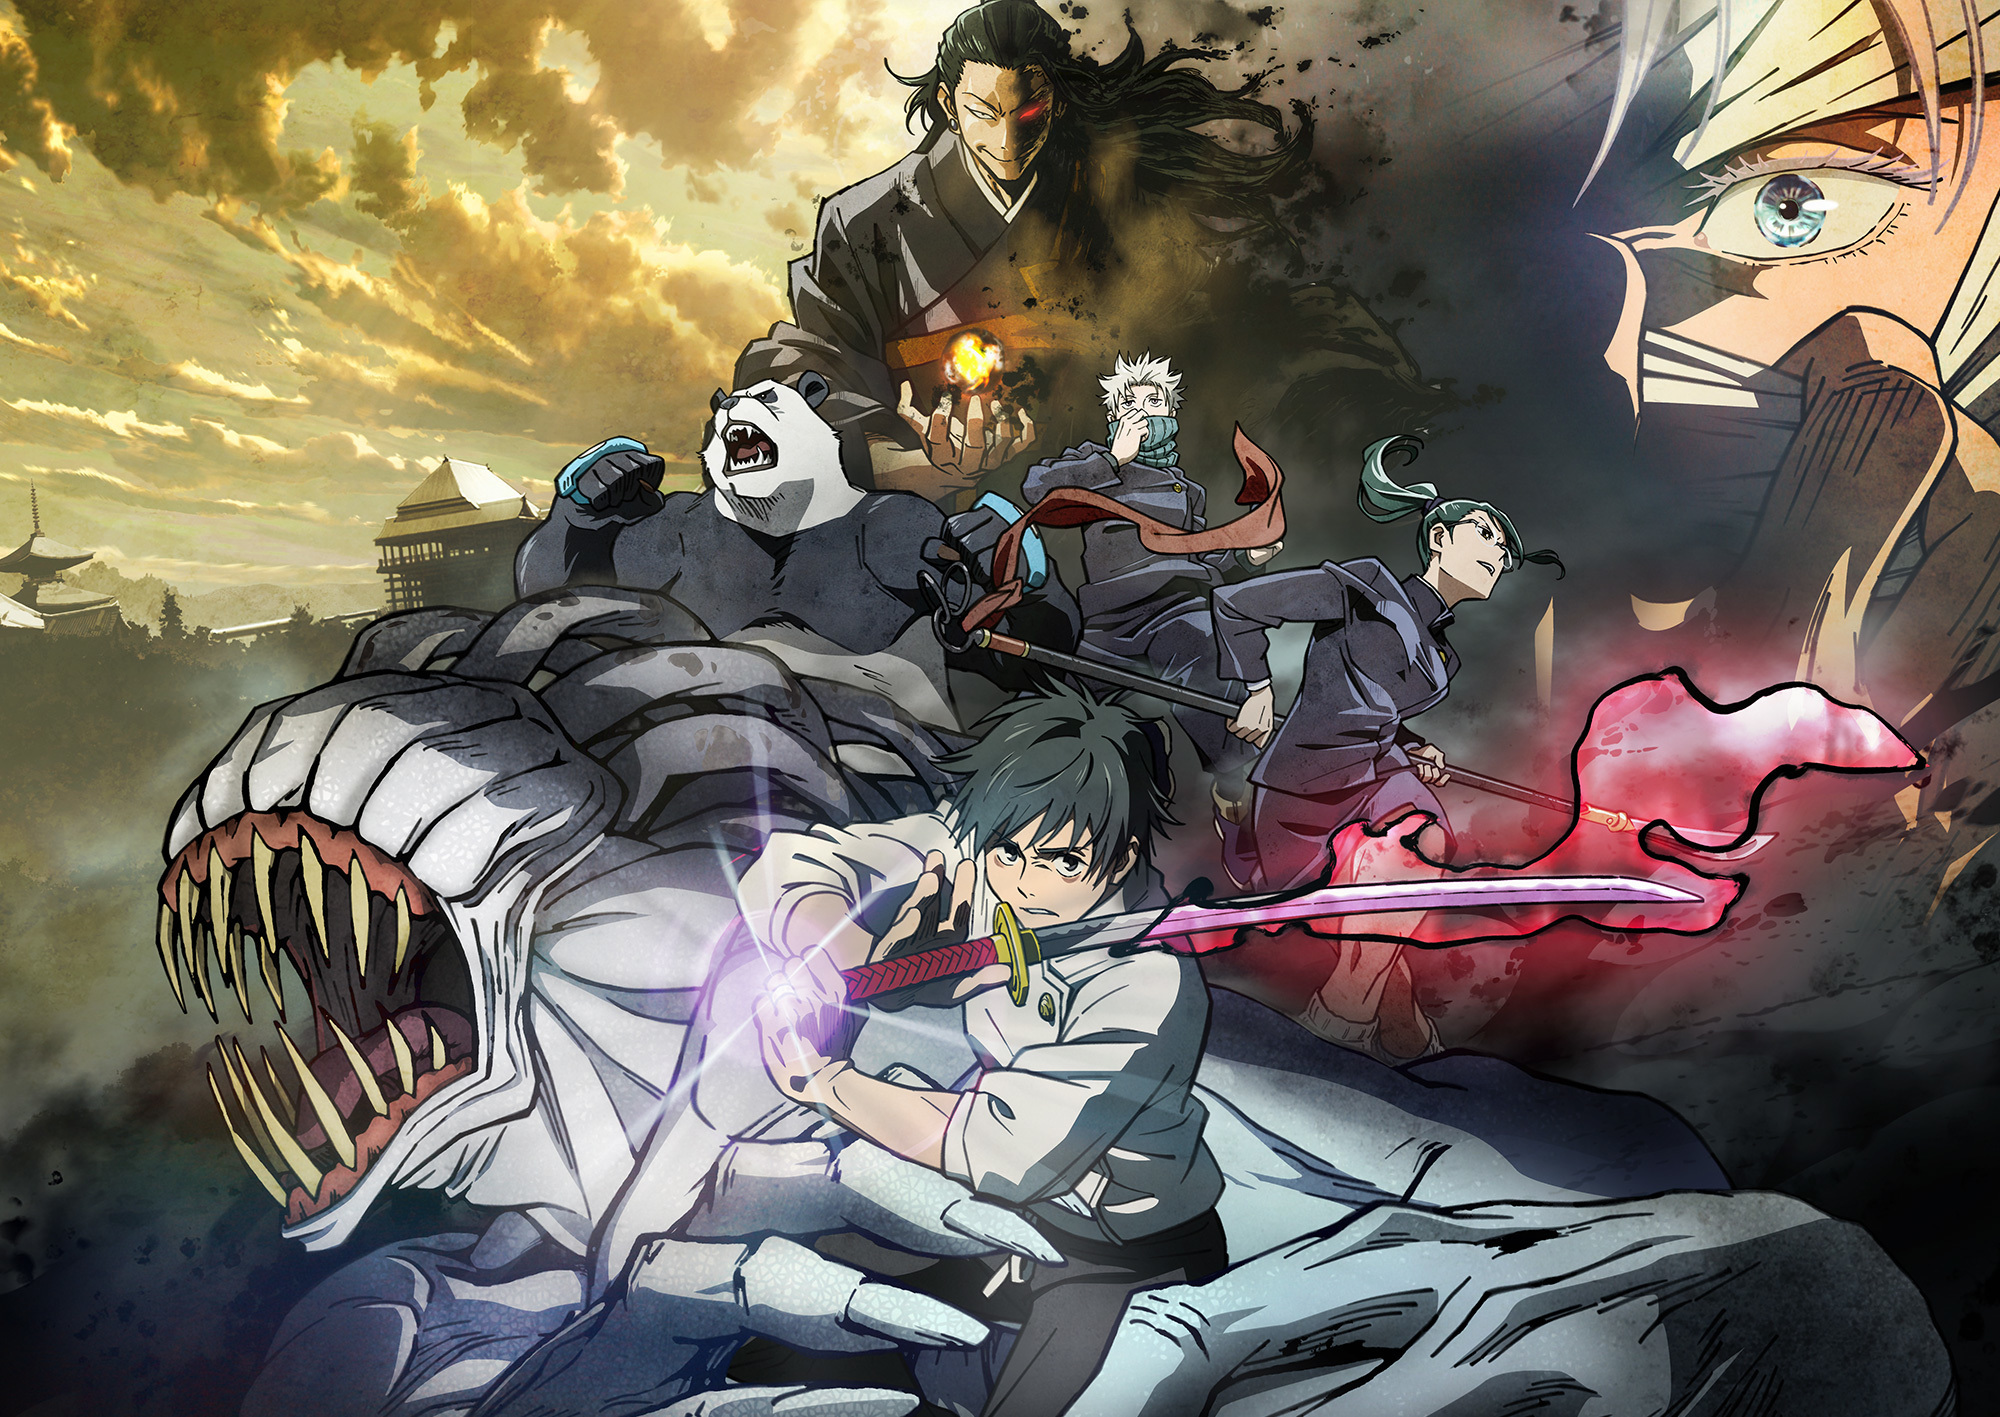 劇場版咒術迴戰0》日本首三日票房達26 億台灣宣布代理消息《Jujutsu Kaisen 0 the Movie》 - 巴哈姆特